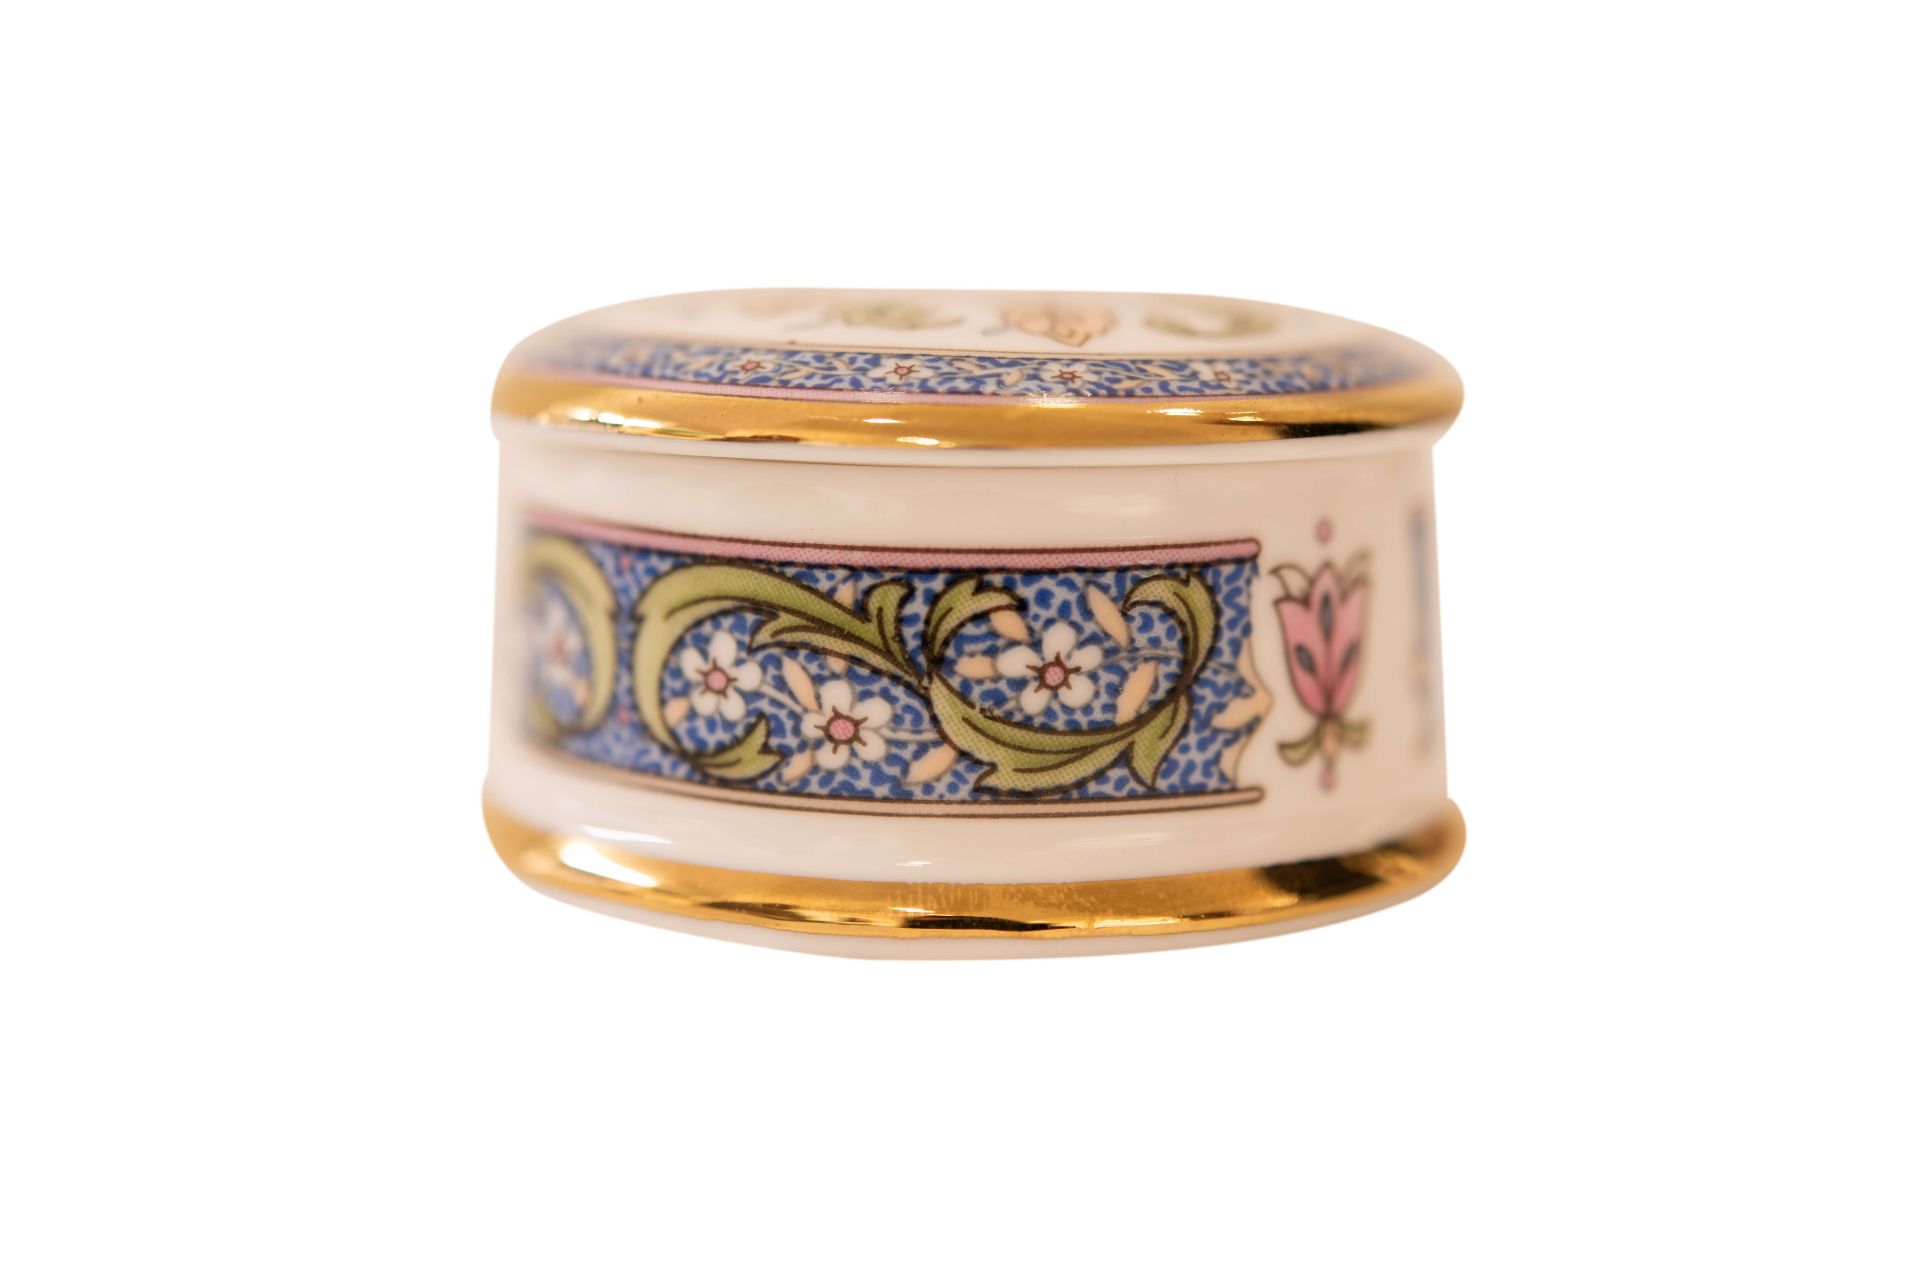 Florial Victoriana Falcon Schmuckkästchen |Florial Victoriana Falcon Jewelry Box - Bild 2 aus 5